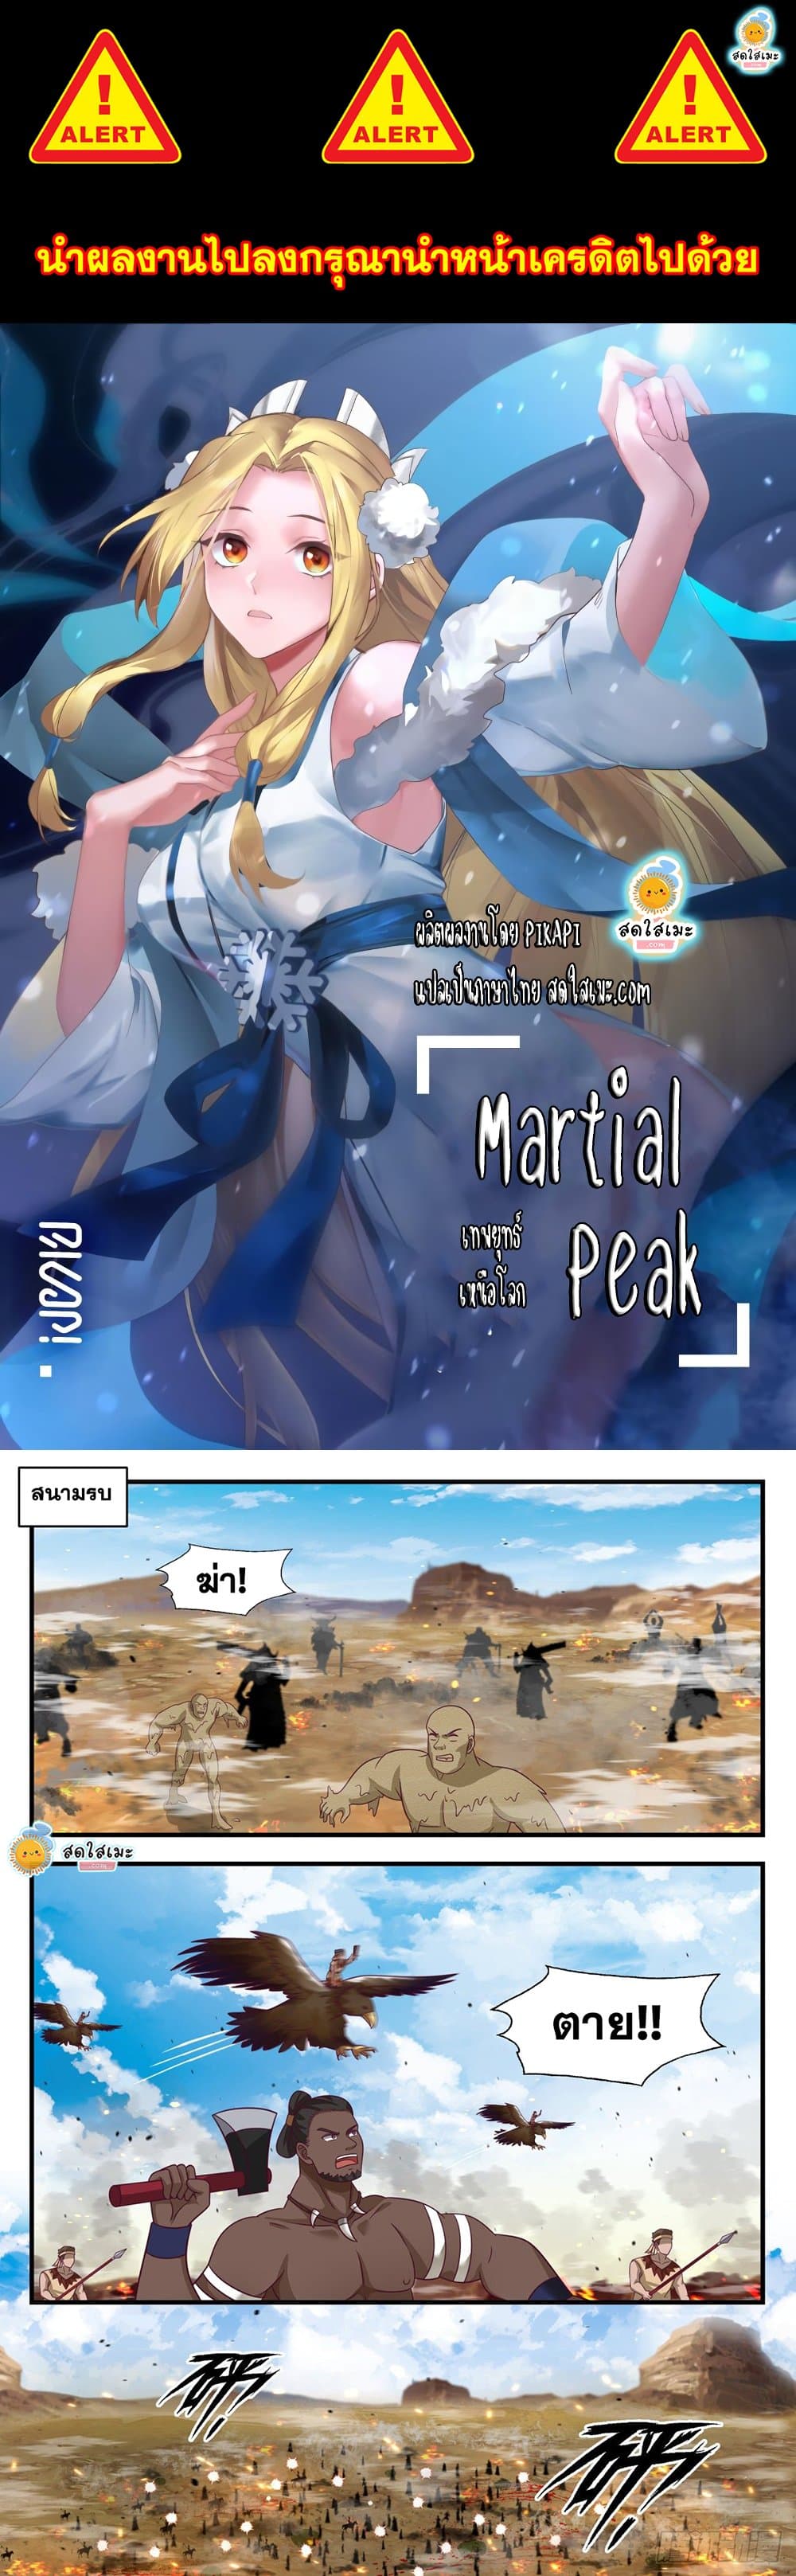 Martial Peak2028 01